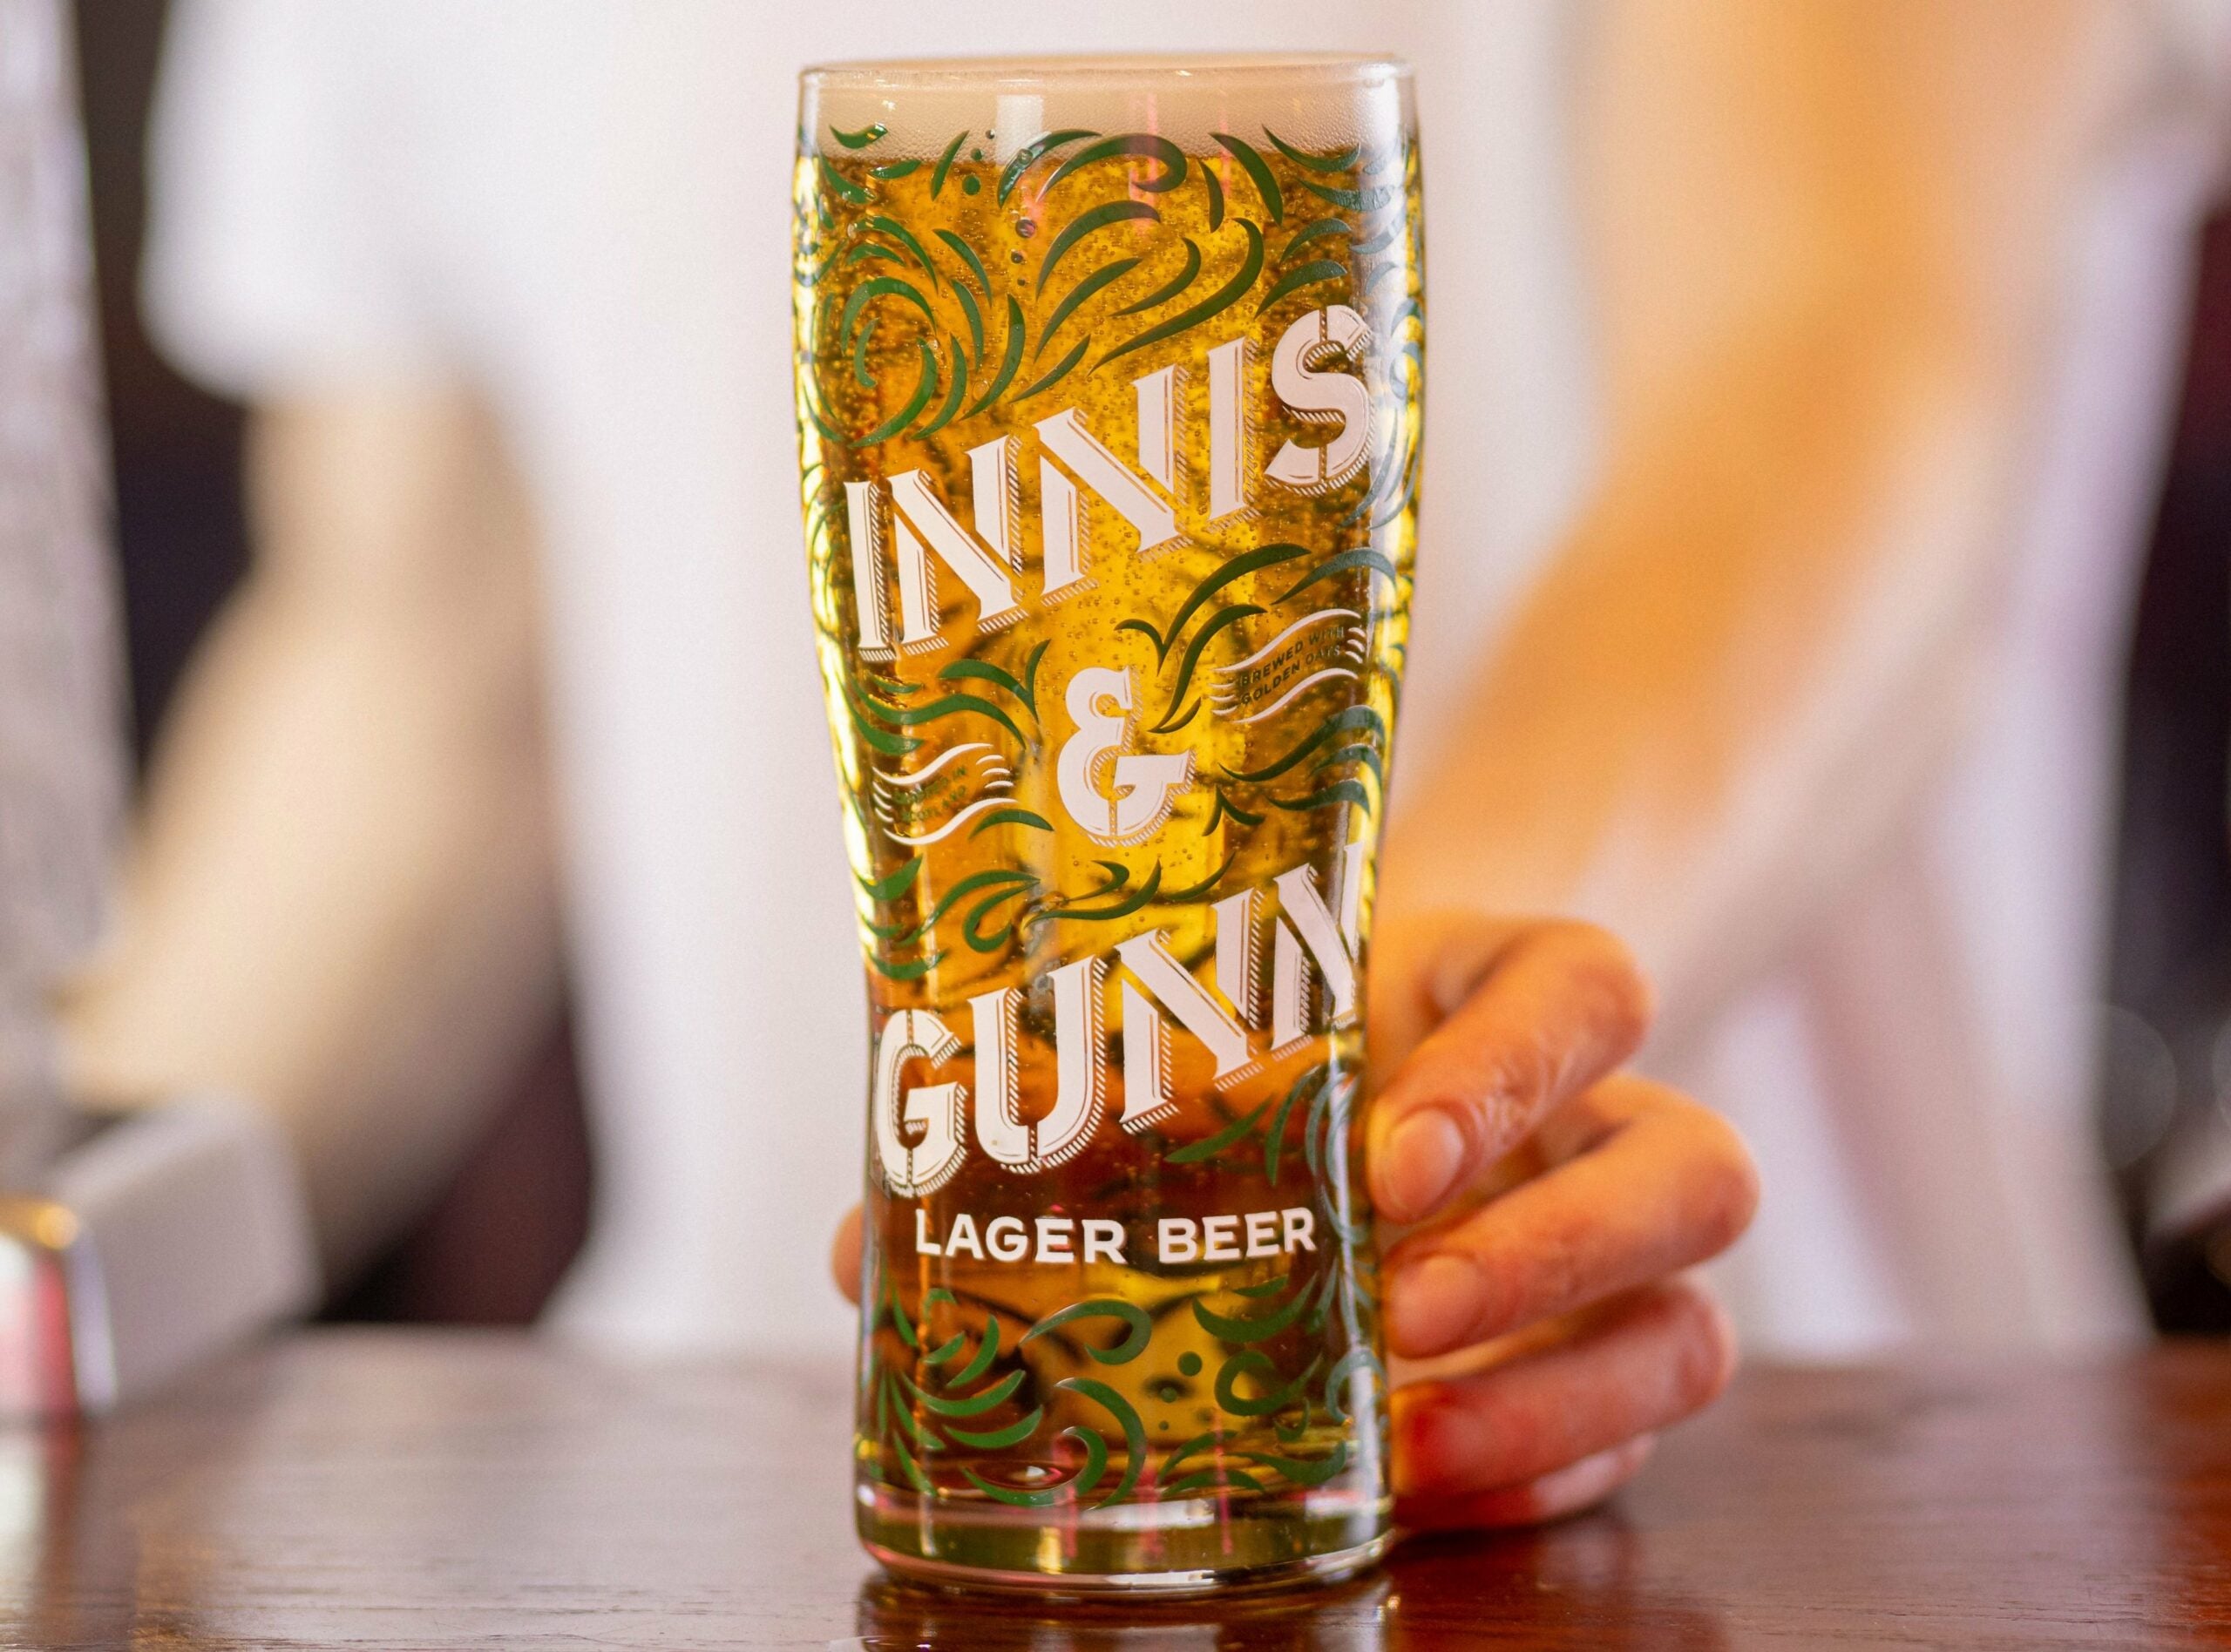 Innis & Gun Lager Beer 0,33l - Bier aus Schottland mit 4,6% Vol.